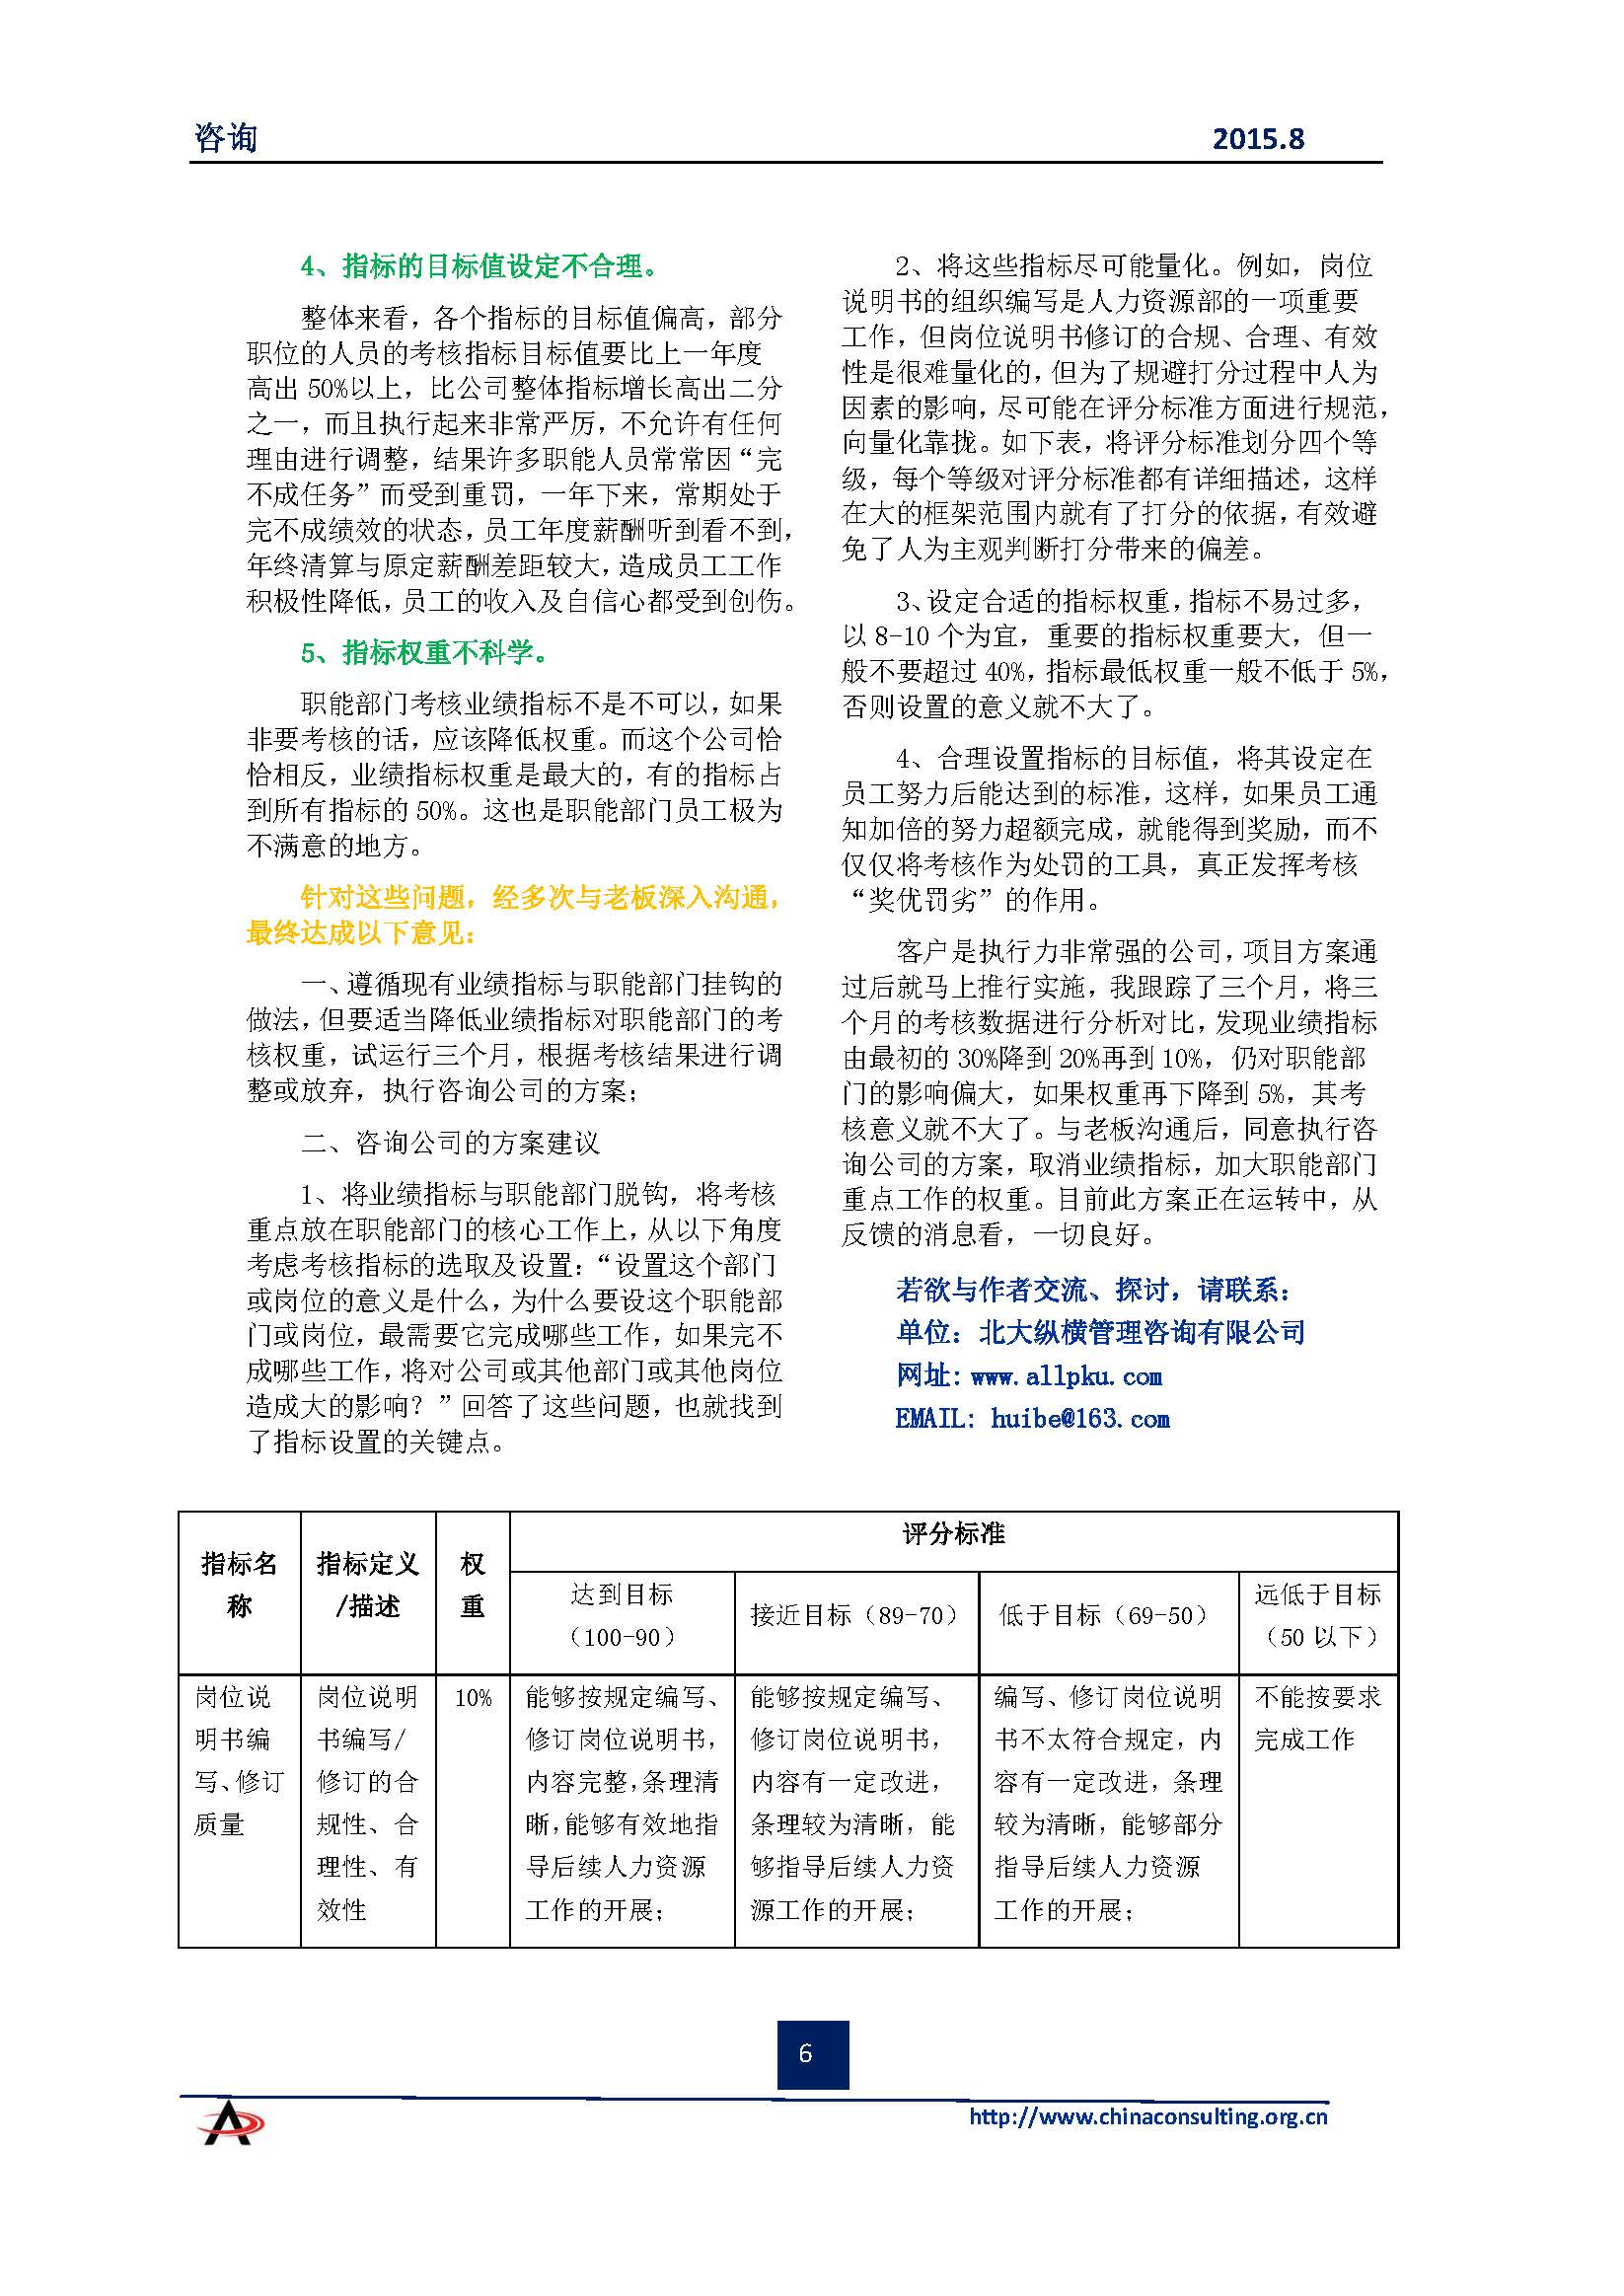 中国科技咨询协会会刊（第四十期）初稿_页面_08.jpg